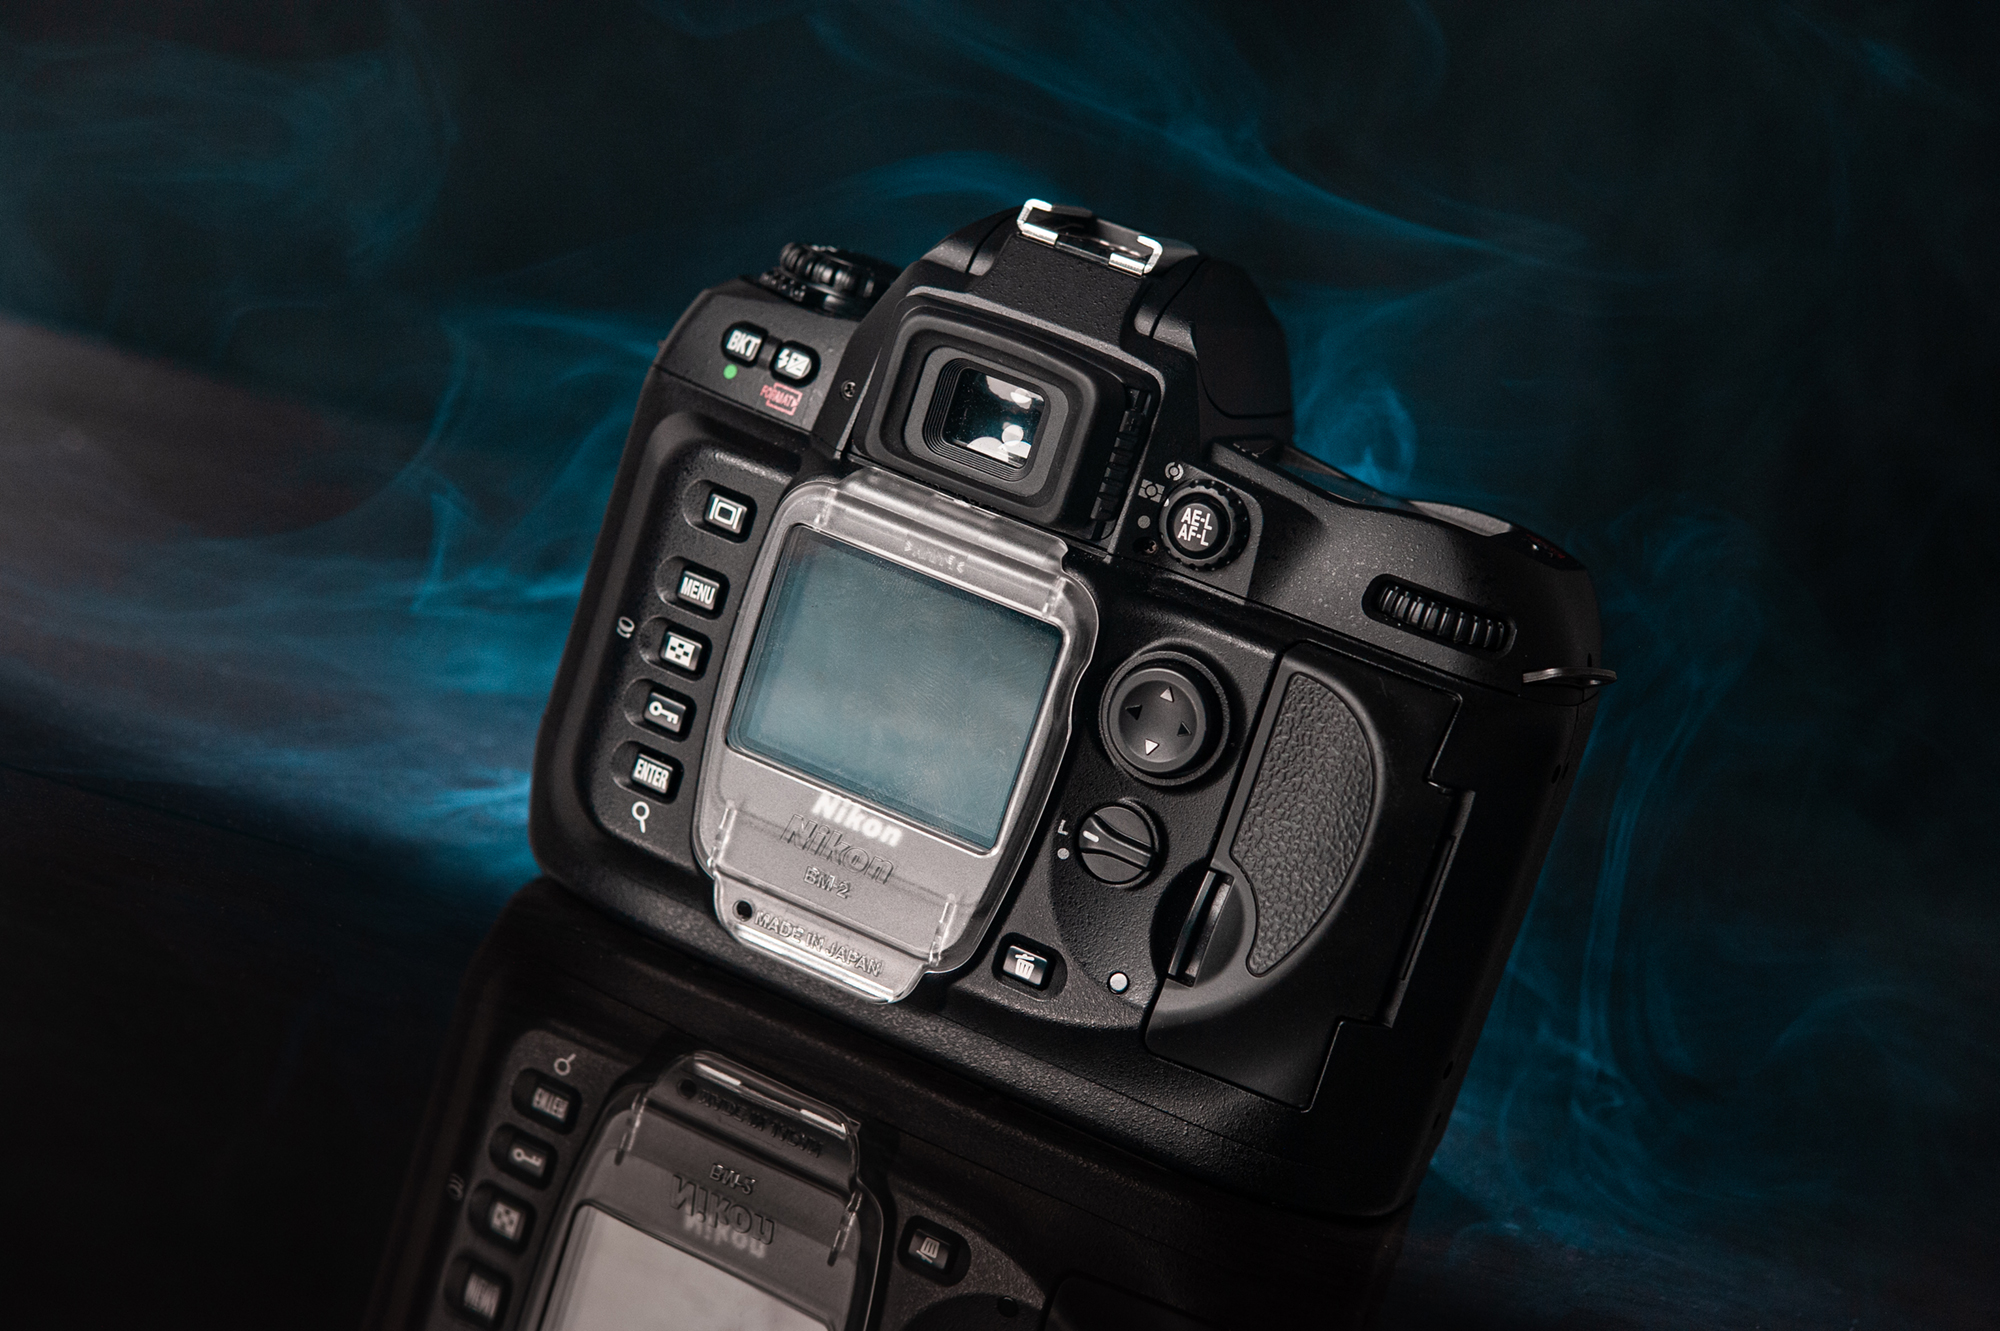 Lustrzanka cyfrowa Nikon D100 w stanie kolekcjonerskim, która znajduje się w InterFoto.eu